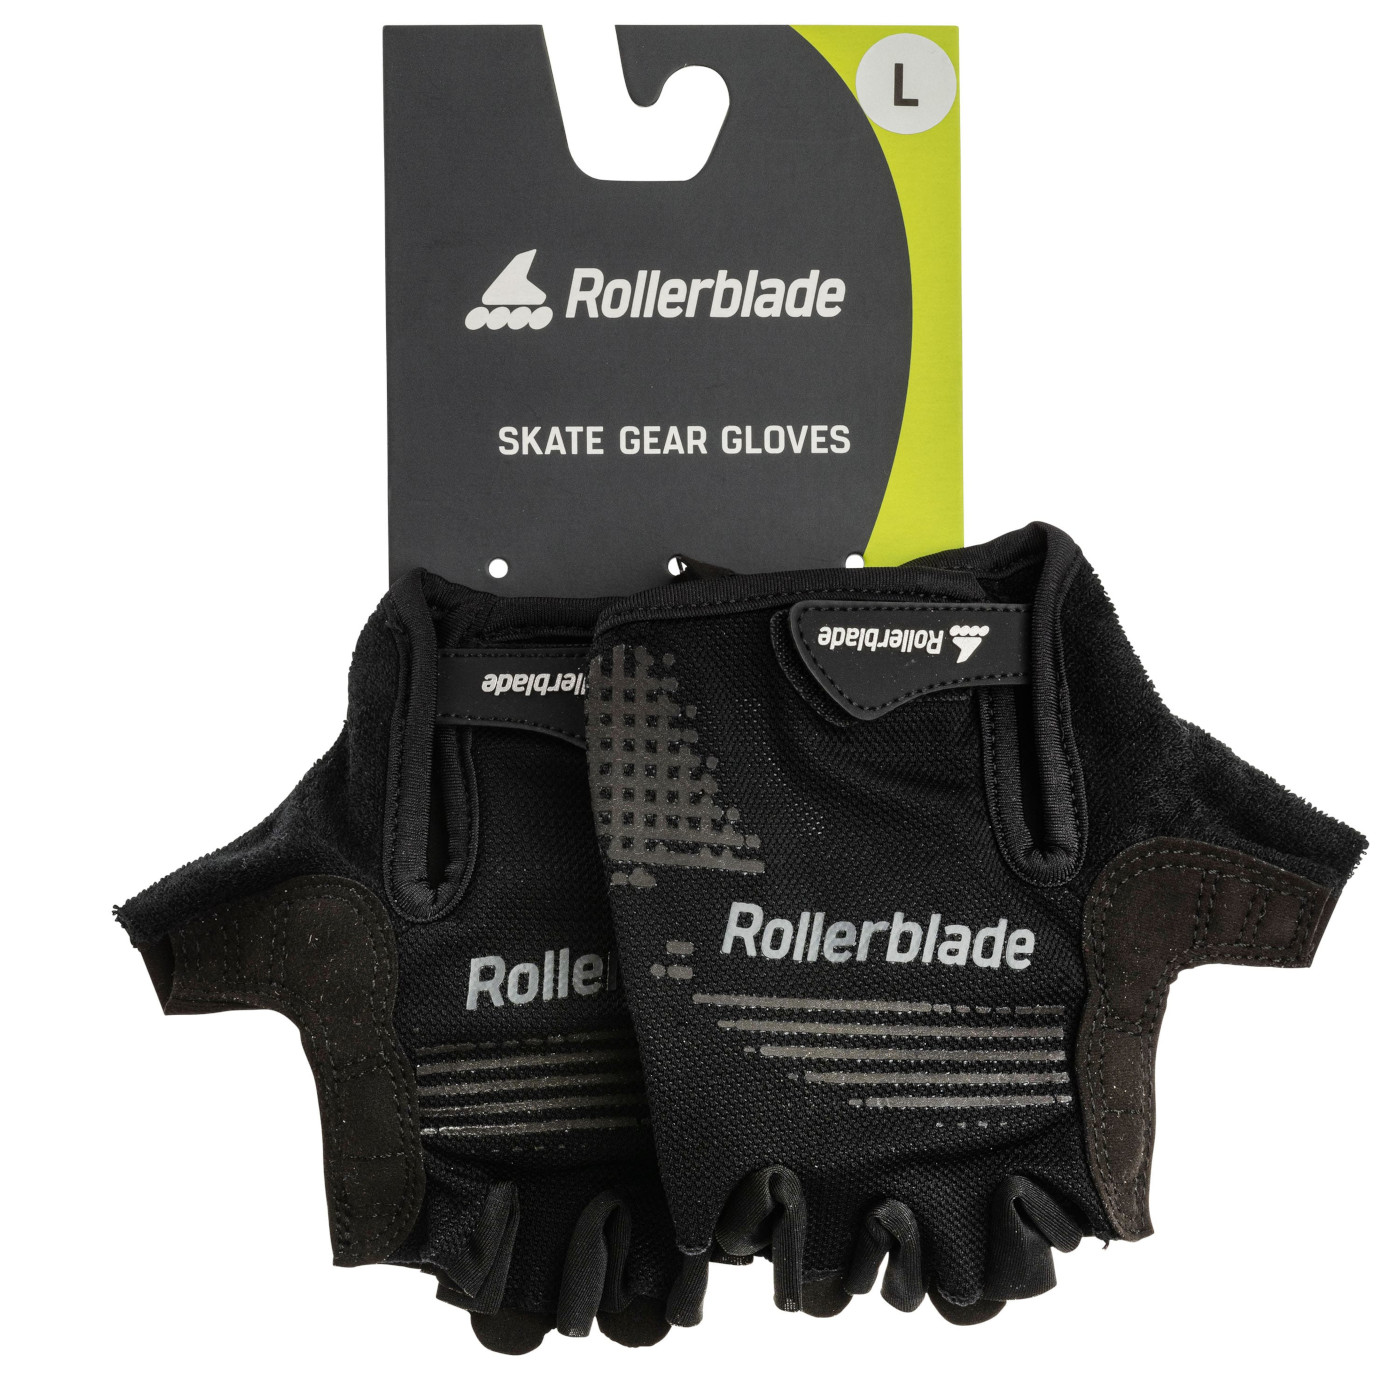 Immagine prodotto da Rollerblade Skate Gear Gloves - Protezioni per le mani - nero